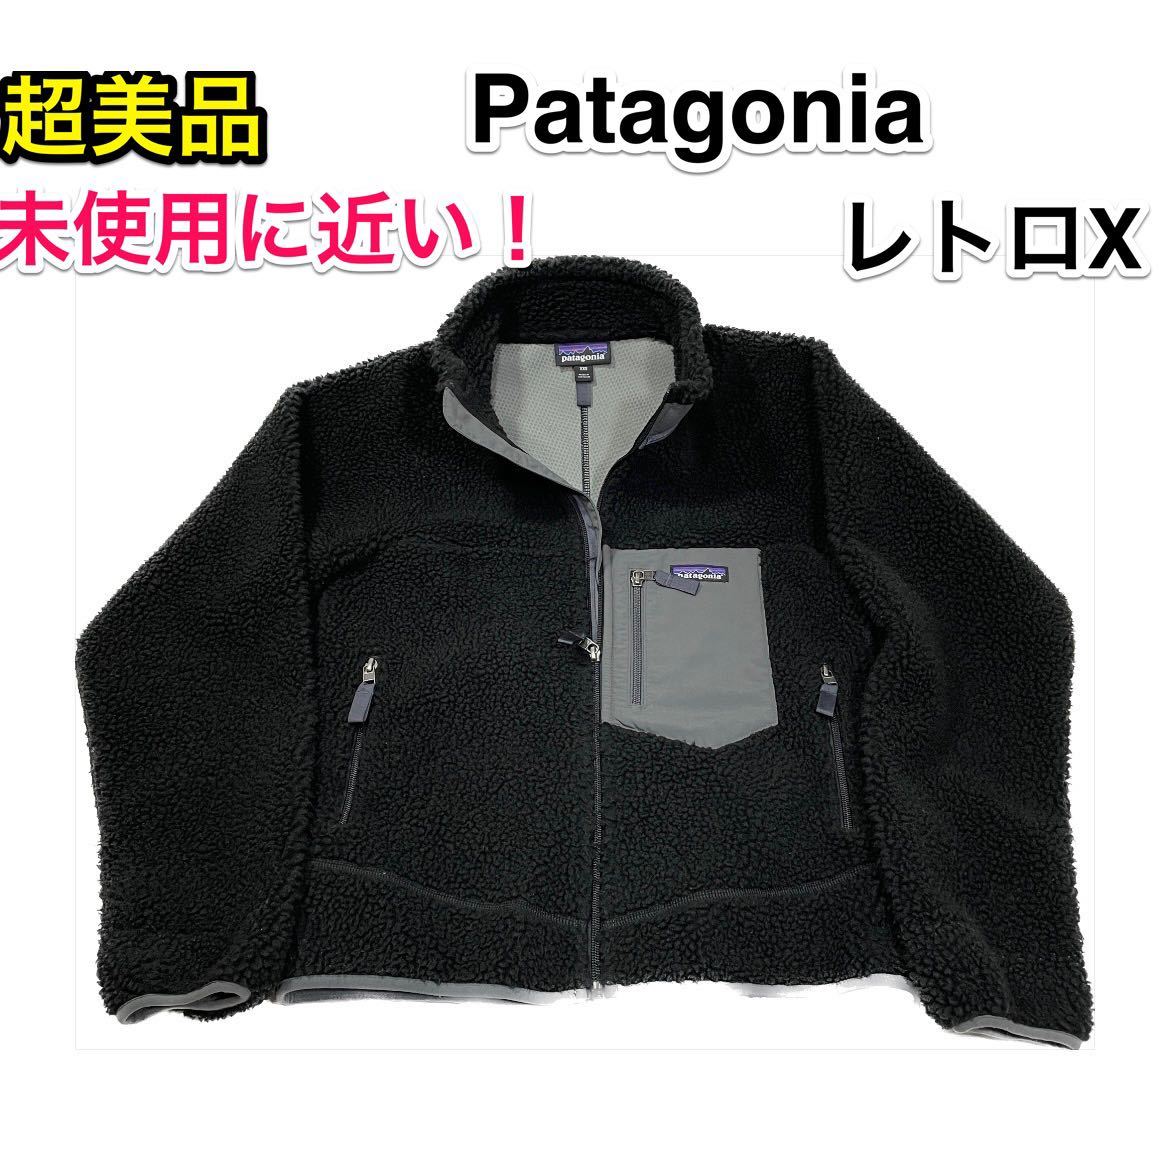 【超美品・未使用に近い】Patagonia レトロX フリースベスト メンズXXS 普段XS〜Sサイズの方/パタゴニアR1 R2 R3好きに/レディースでも